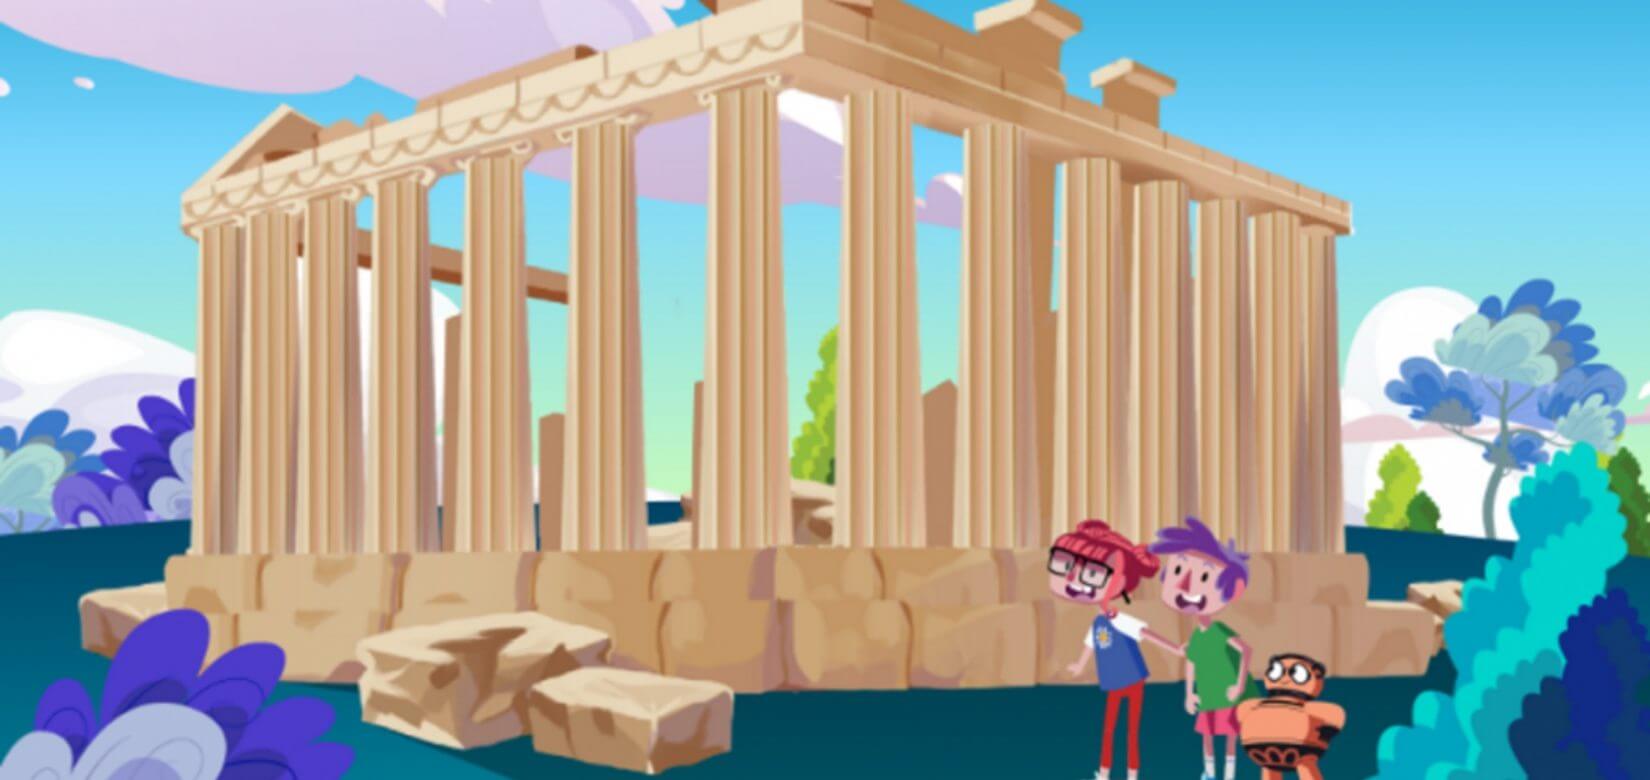 Τα παιδιά γνωρίζουν την Ελλάδα με το πρώτο animated video - Ο ΧέLLO τα καλωσορίζει!